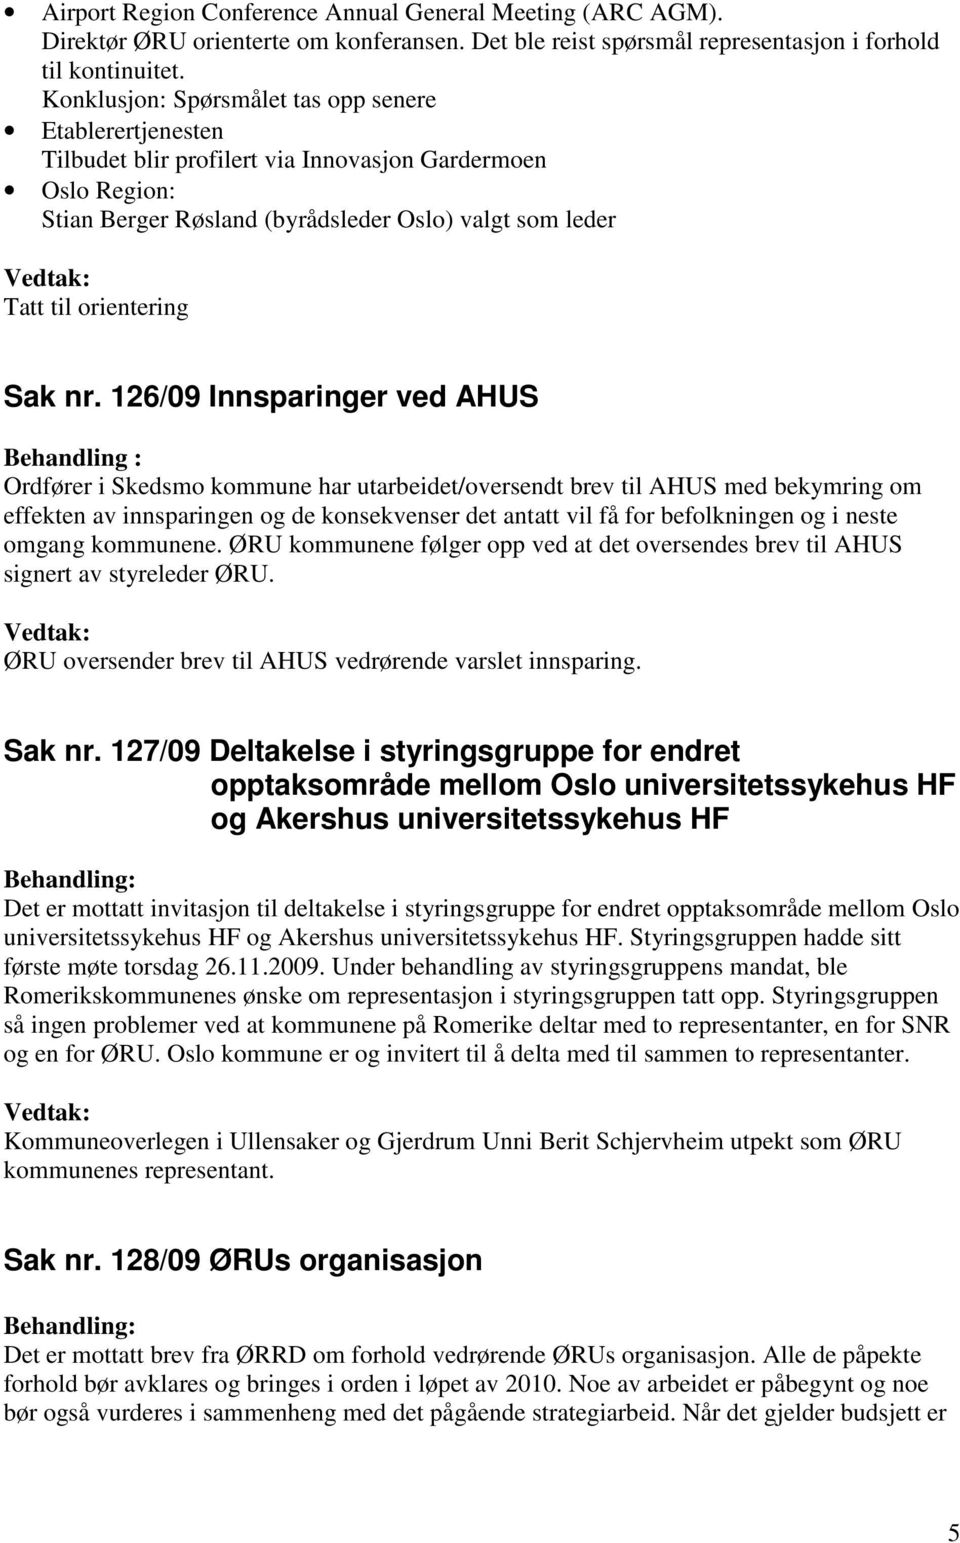 126/09 Innsparinger ved AHUS Behandling : Ordfører i Skedsmo kommune har utarbeidet/oversendt brev til AHUS med bekymring om effekten av innsparingen og de konsekvenser det antatt vil få for